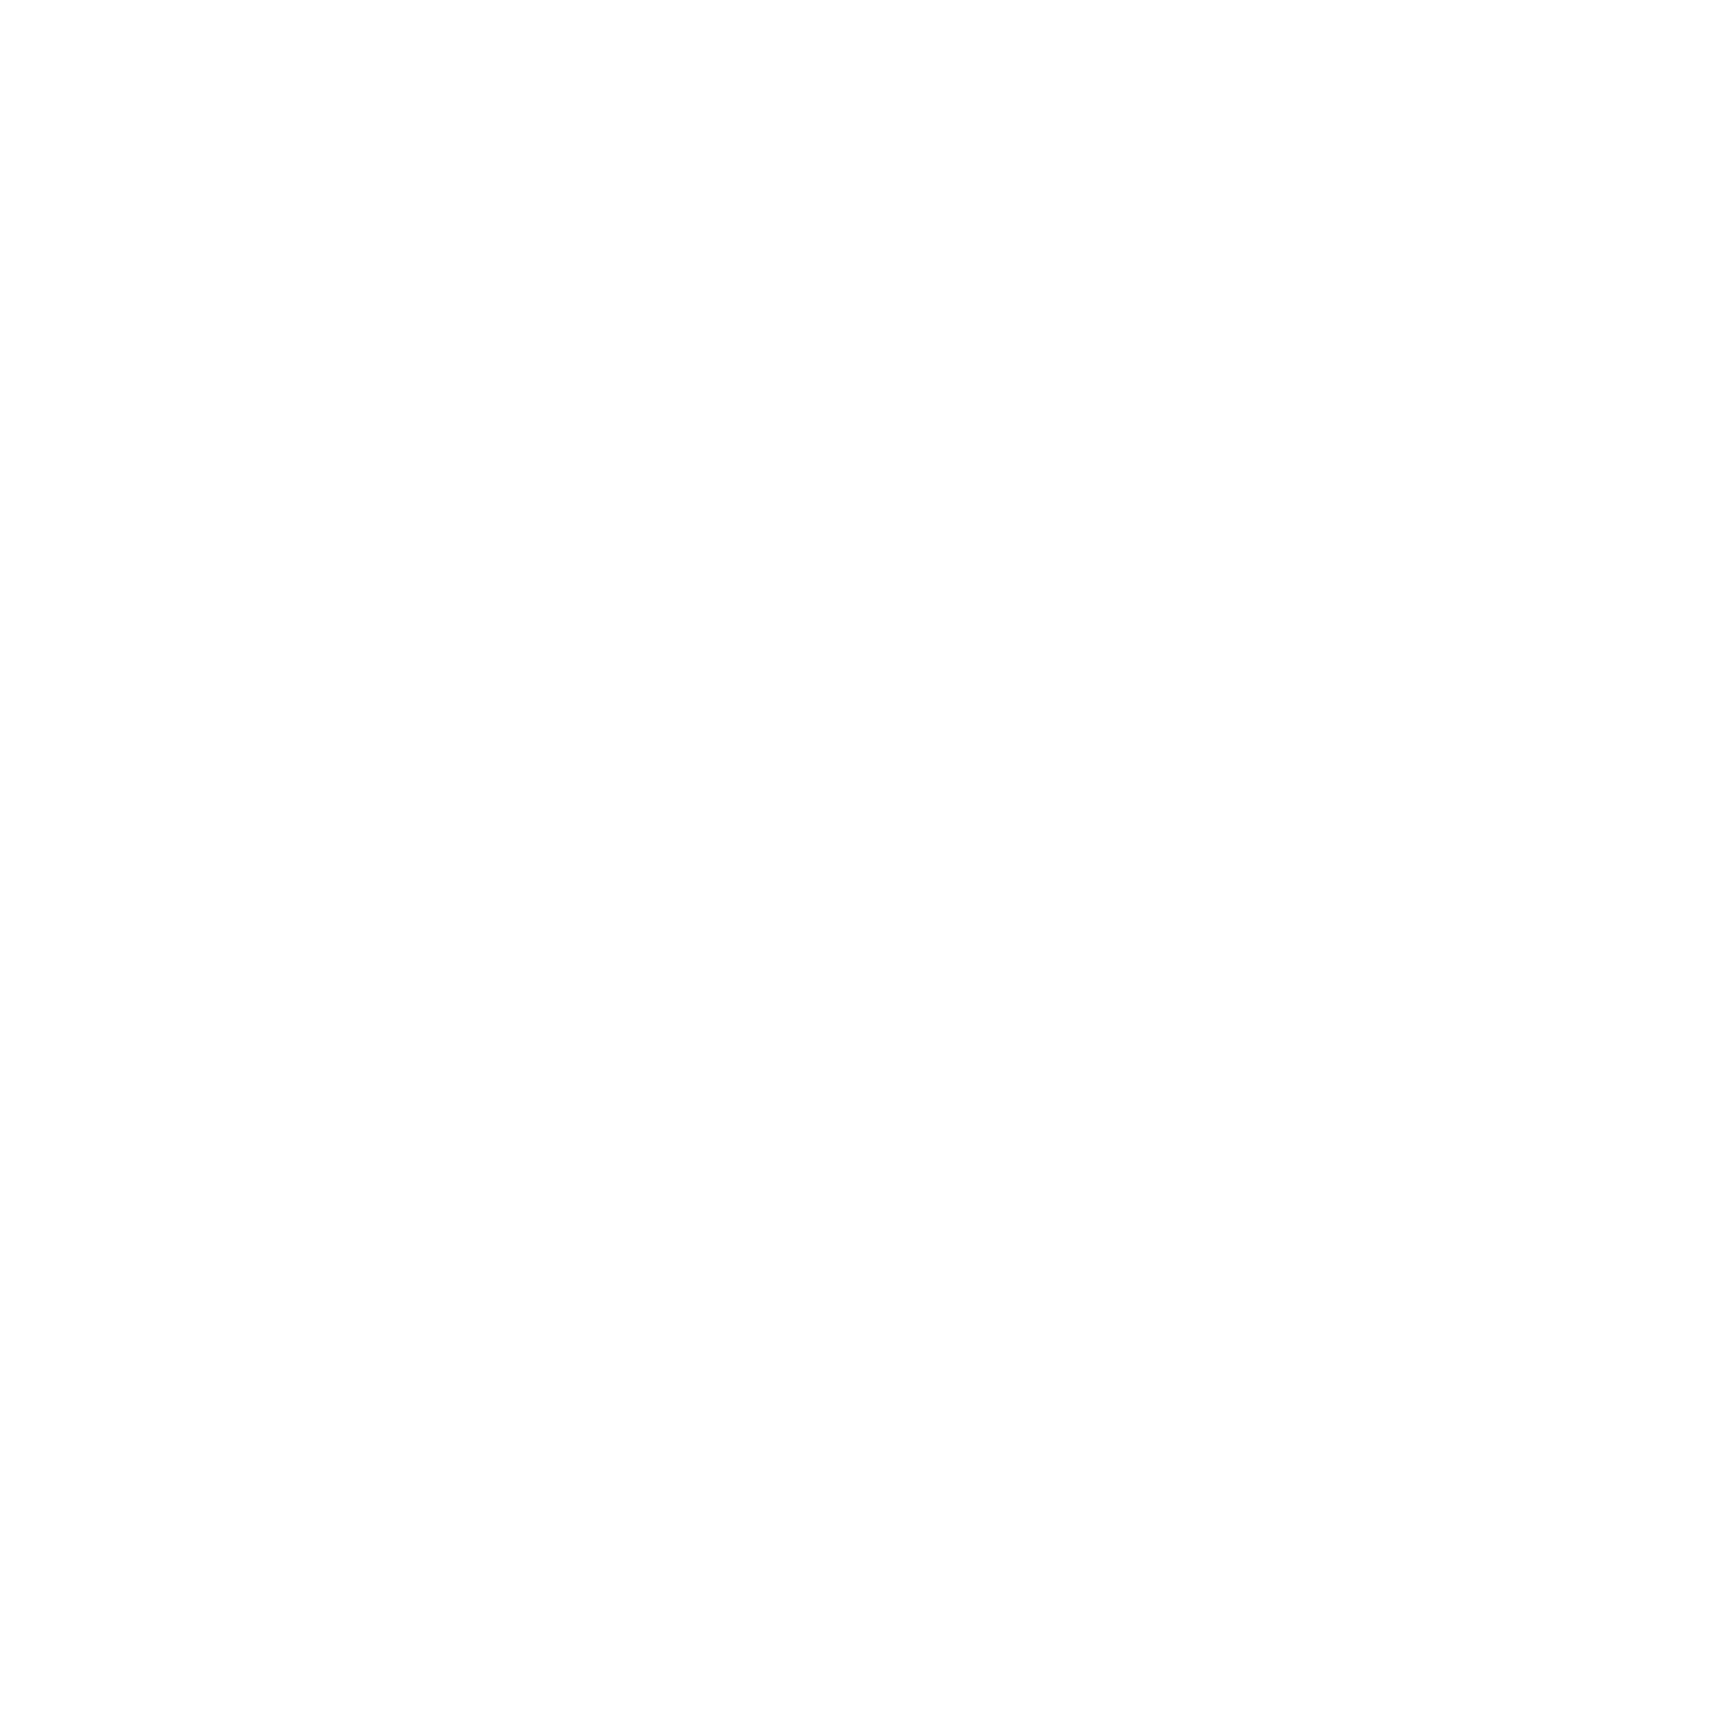 EONARIUM Genesis